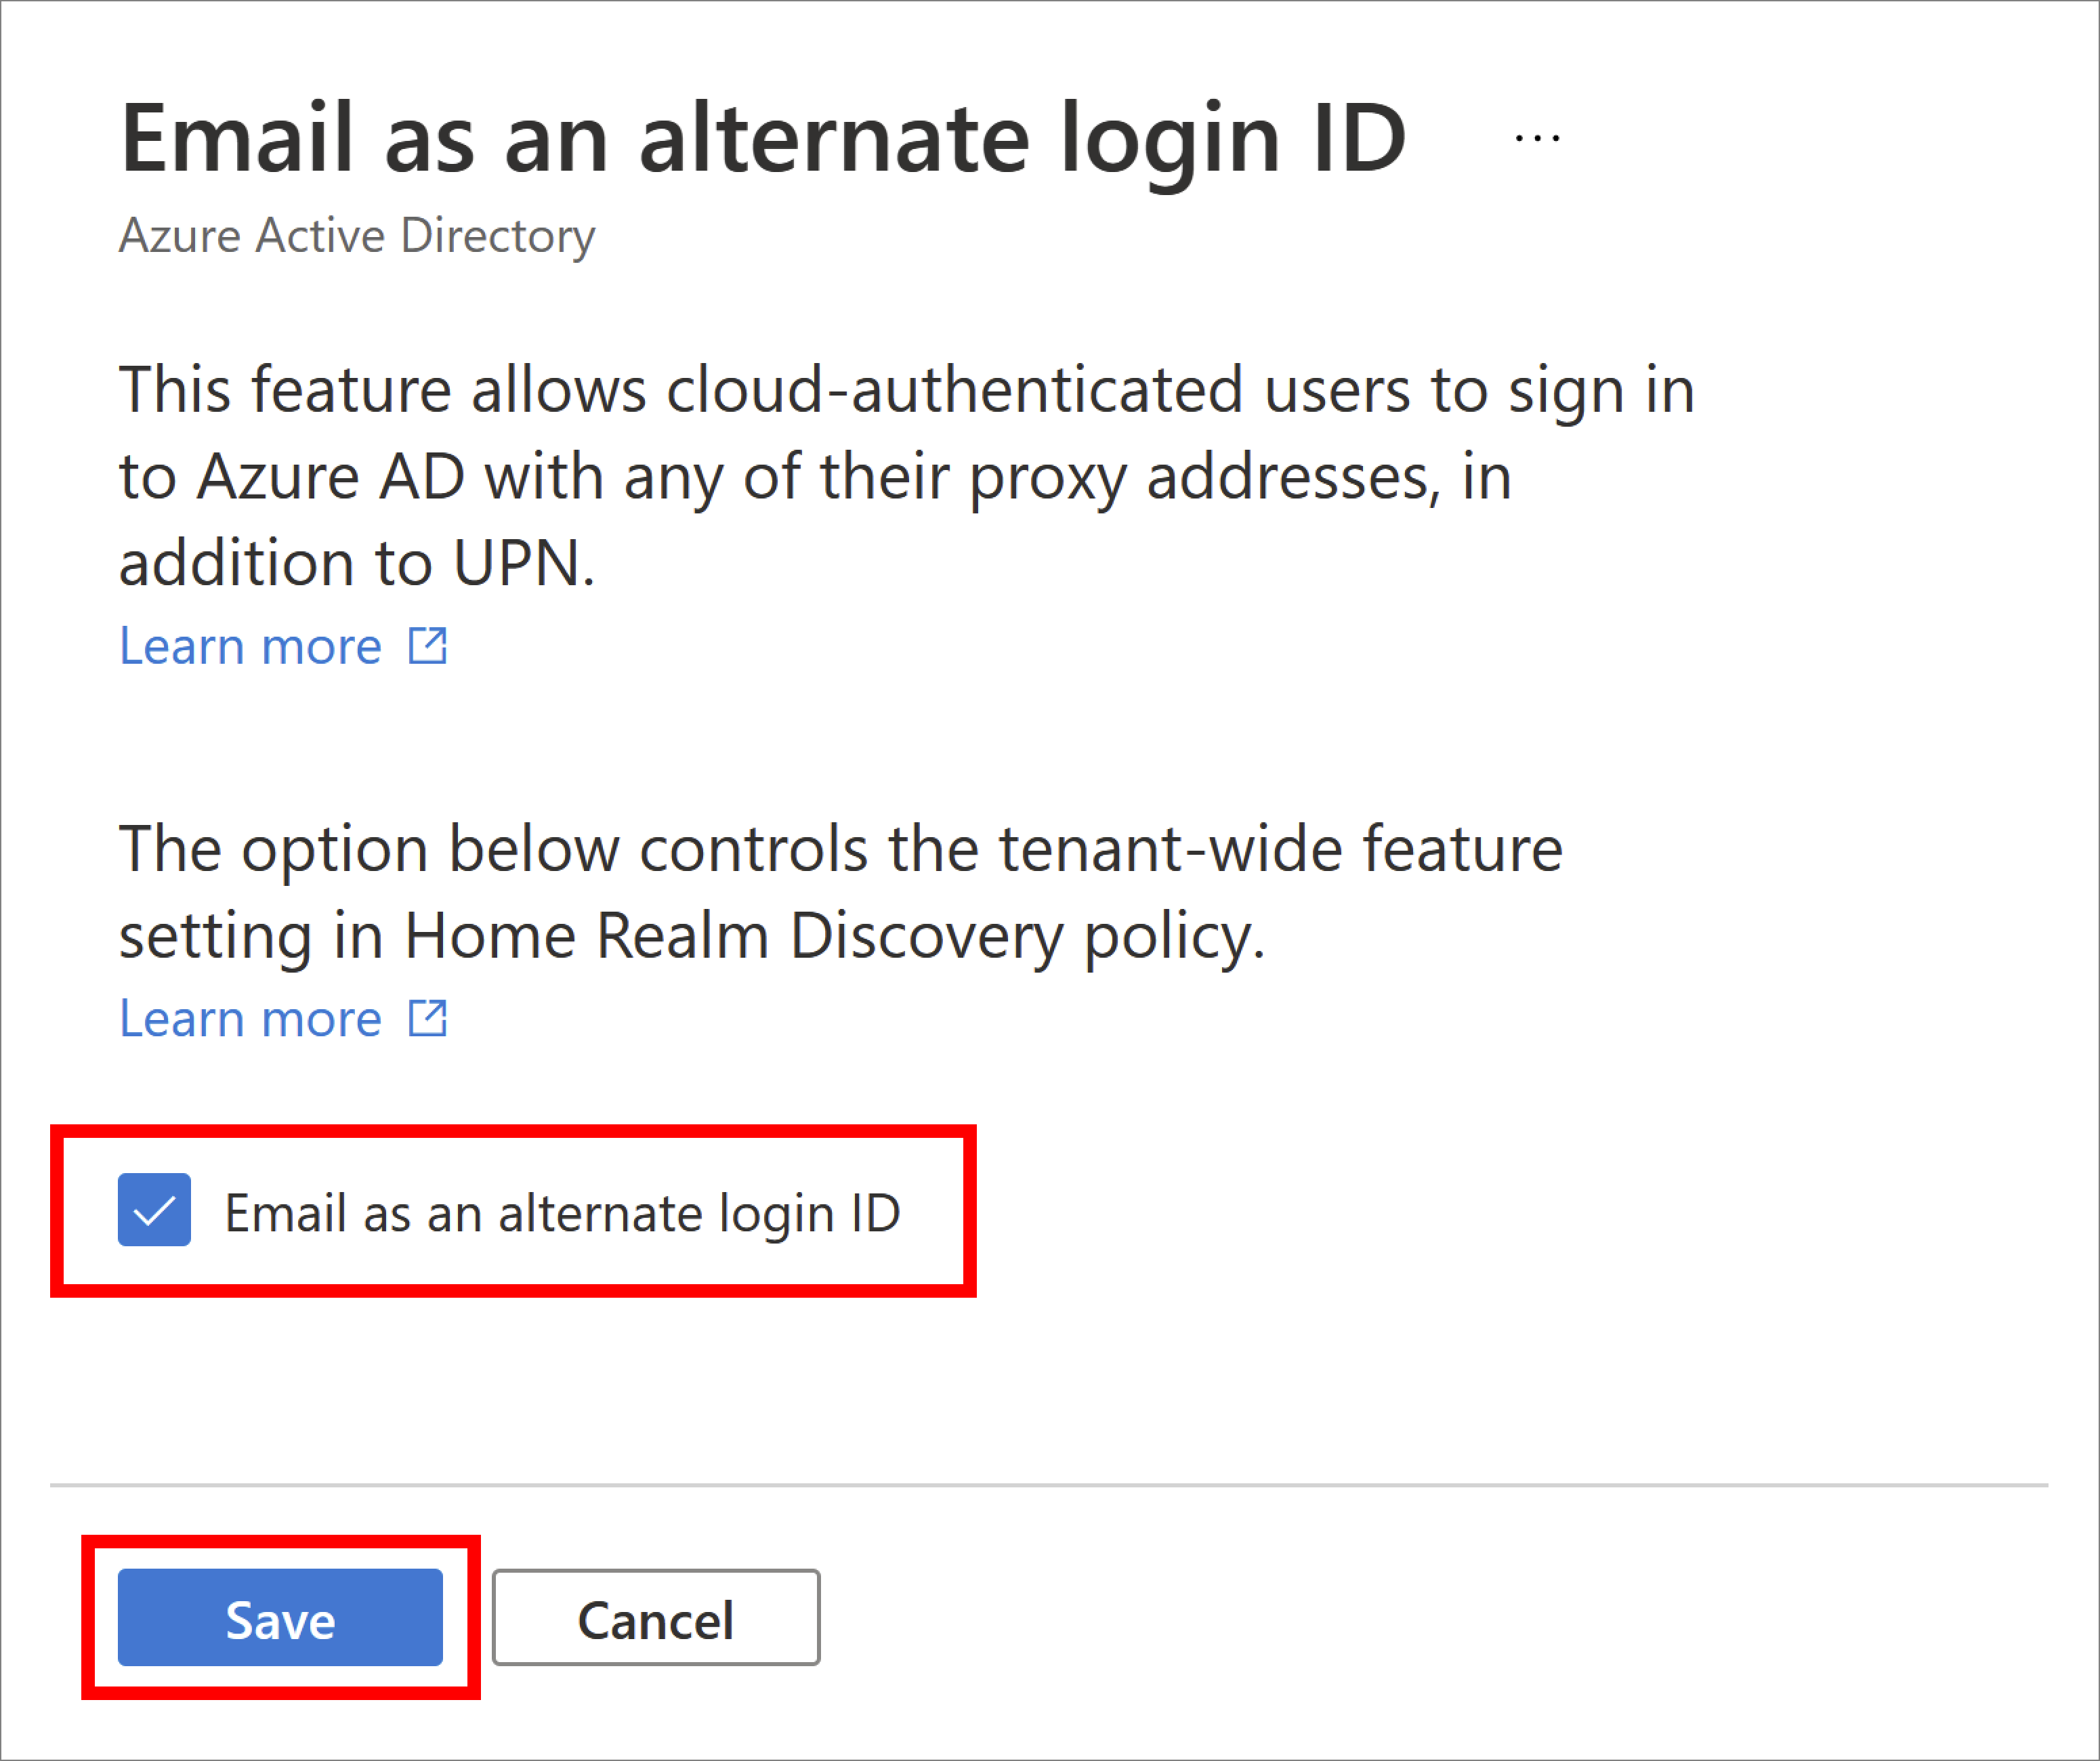 Anmeldung bei Microsoft Entra ID mit einer EMailAdresse als